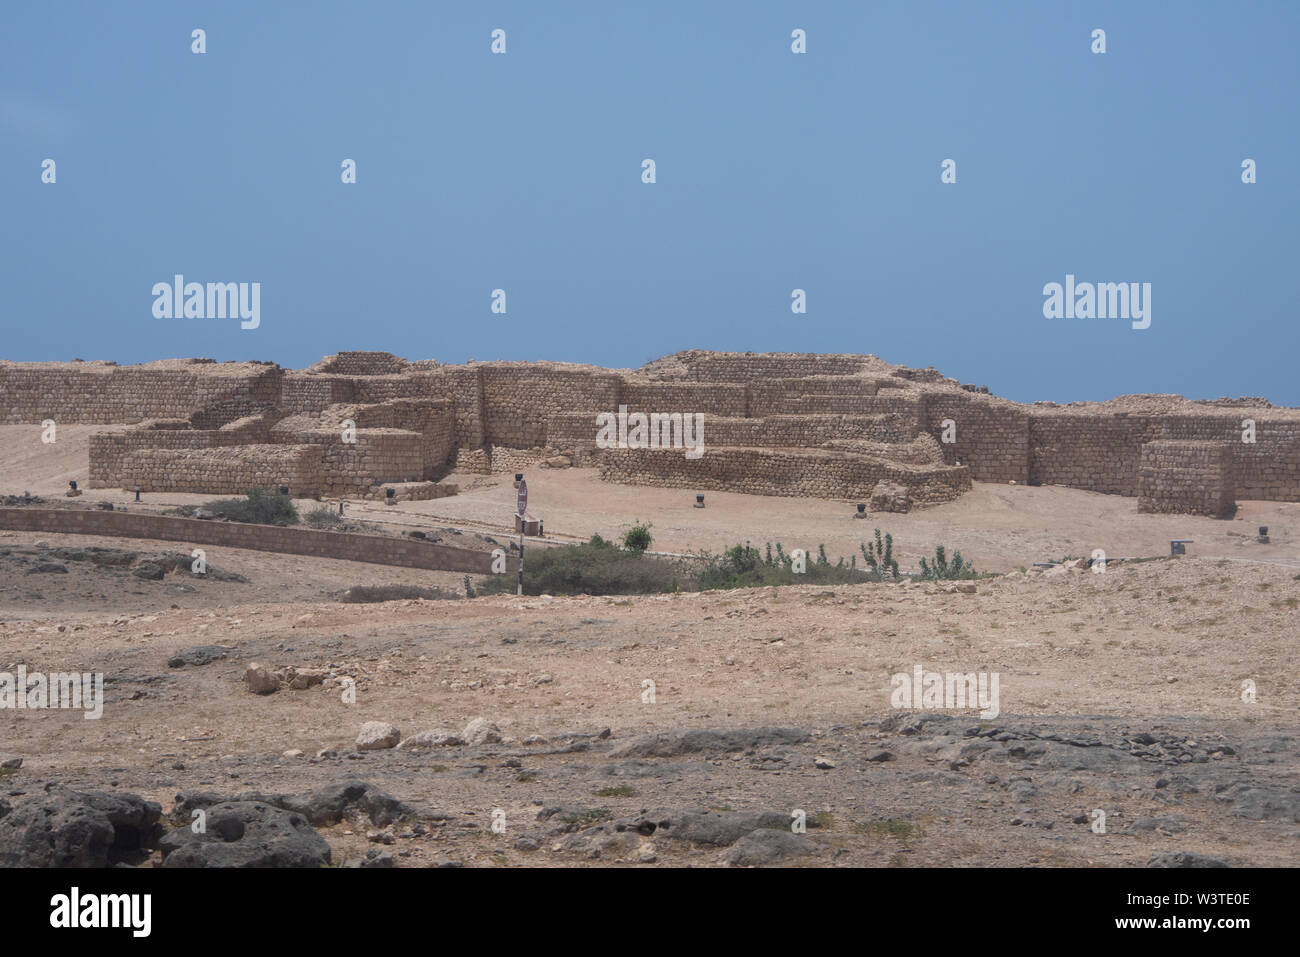 Oman und Dhofar, in der Nähe von Salalah, Khor Rori. Ruinen der alten vor-islamische Siedlung Sumhuram, Teil des historischen Weihrauch Trail, der UNESCO. Stockfoto